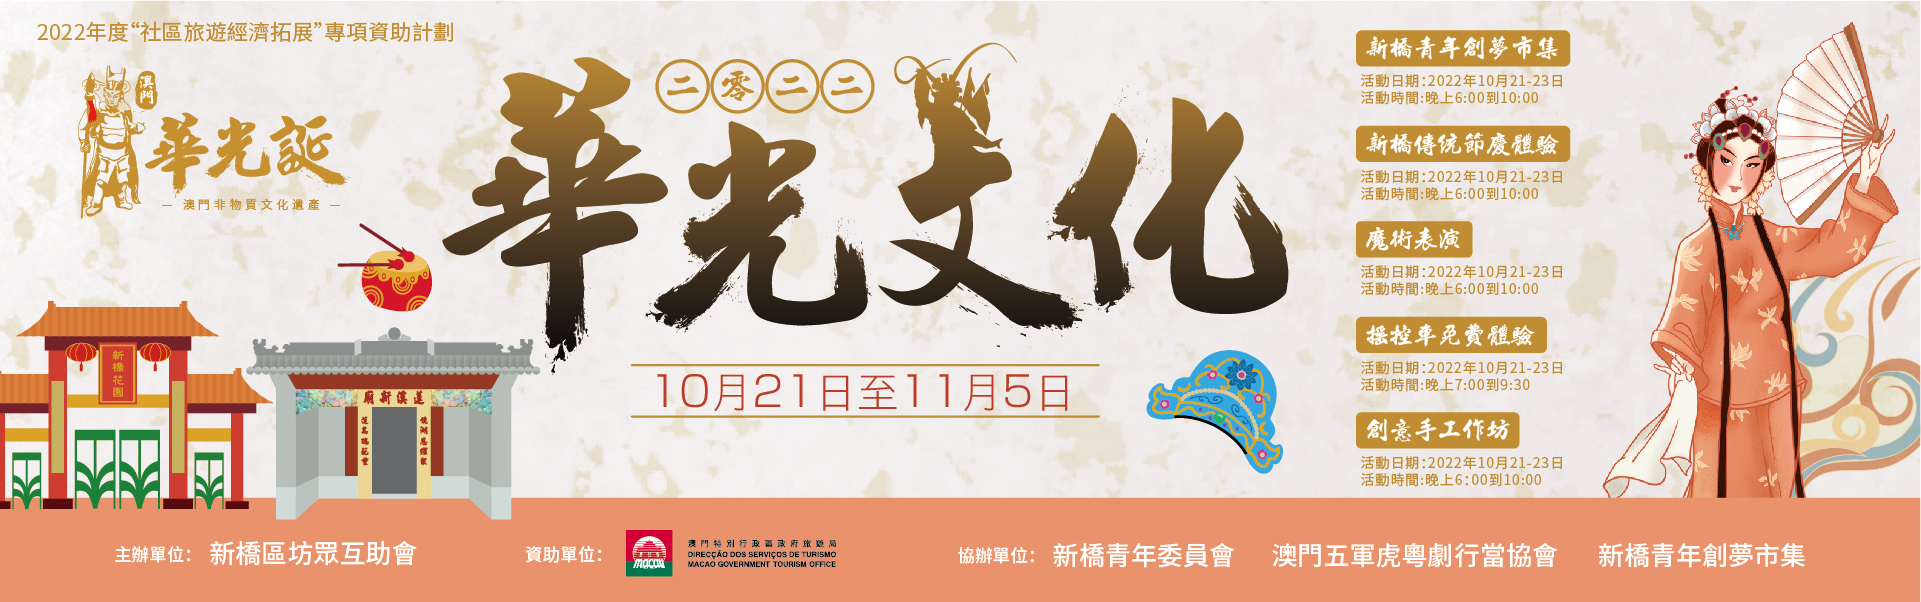 2022新橋華光文化系列活動10月21日舉辦